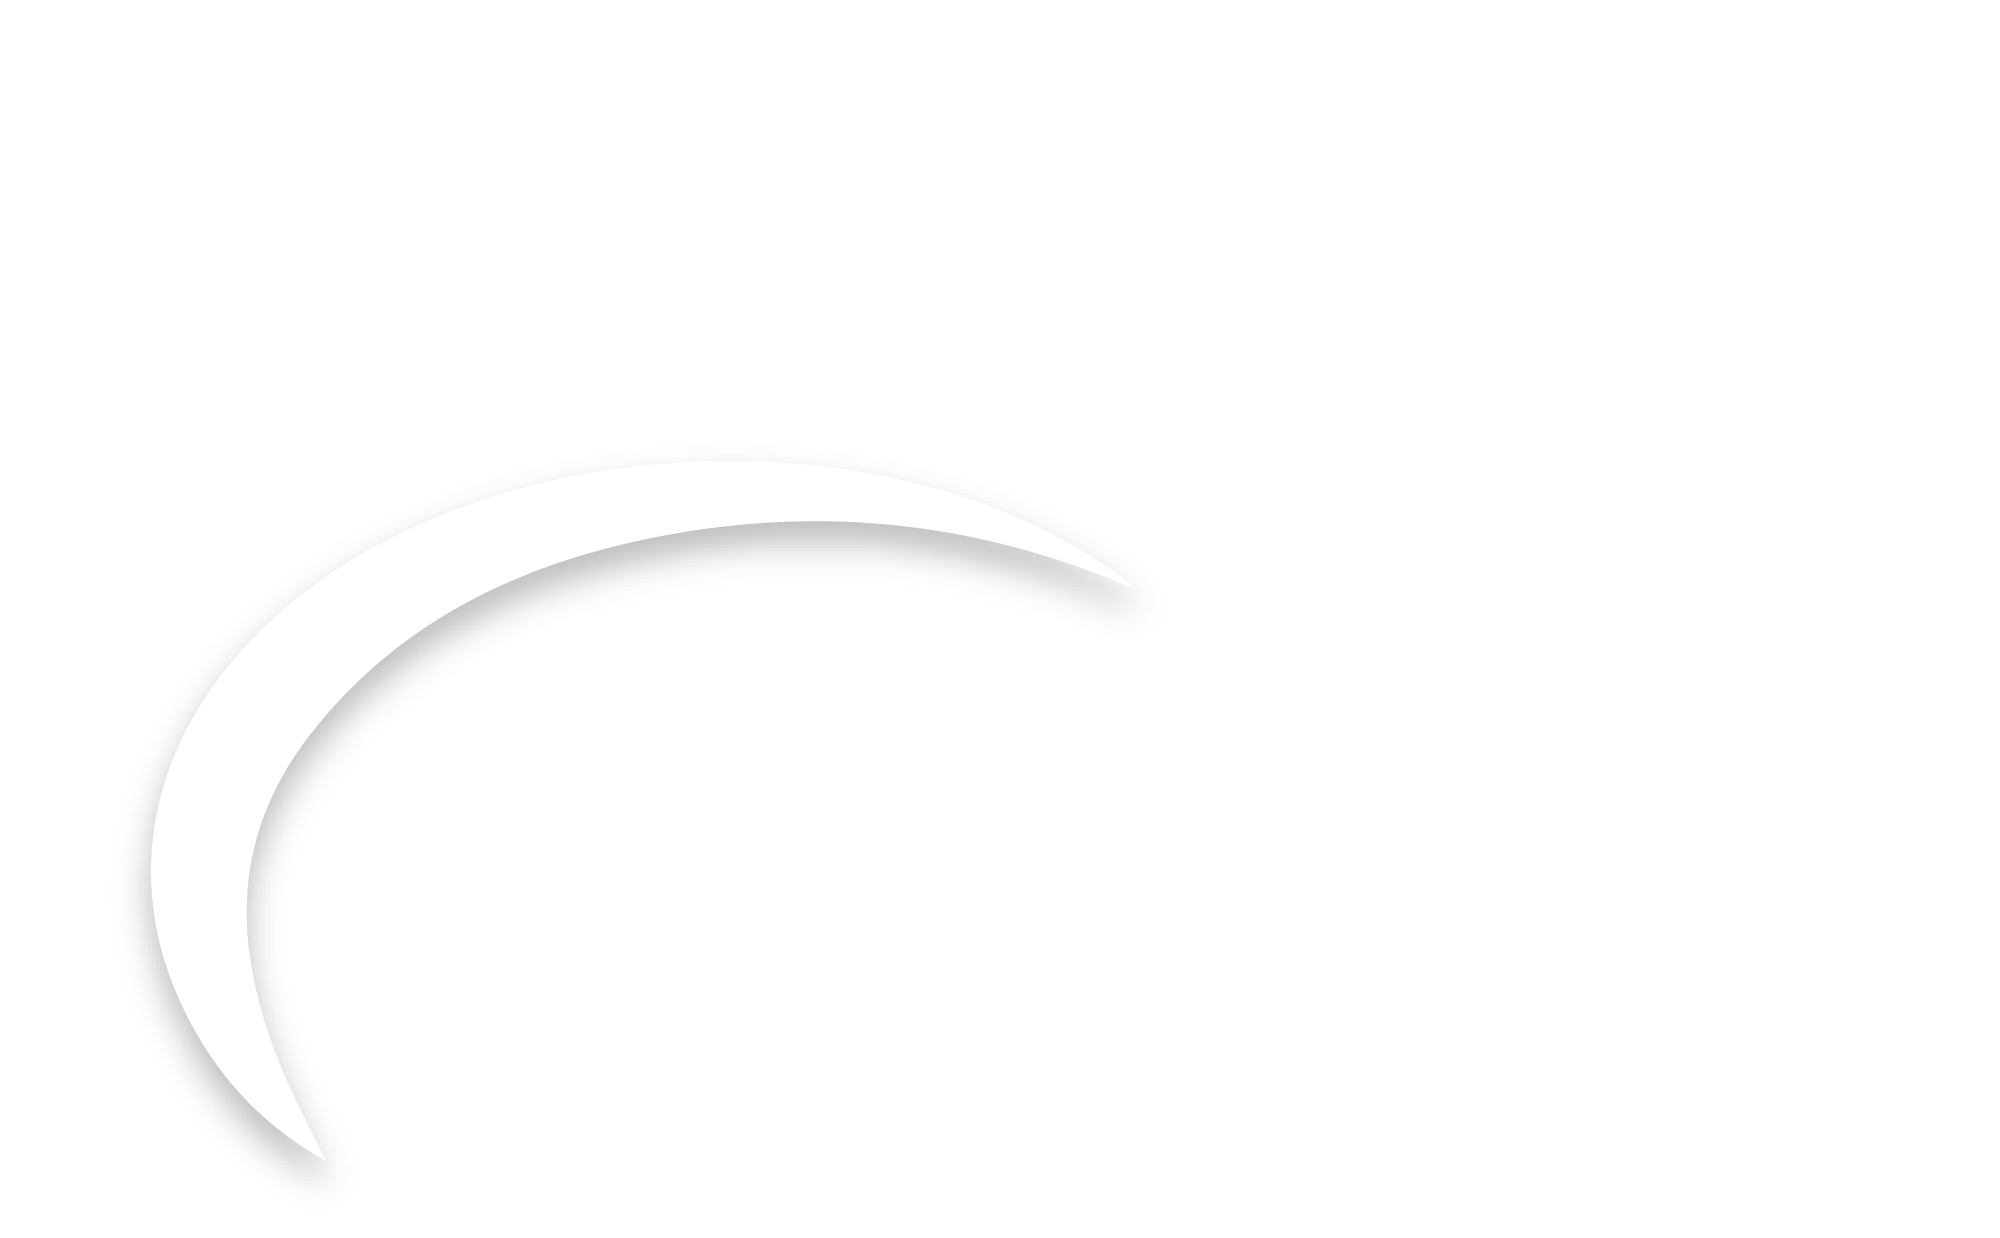 auxilium